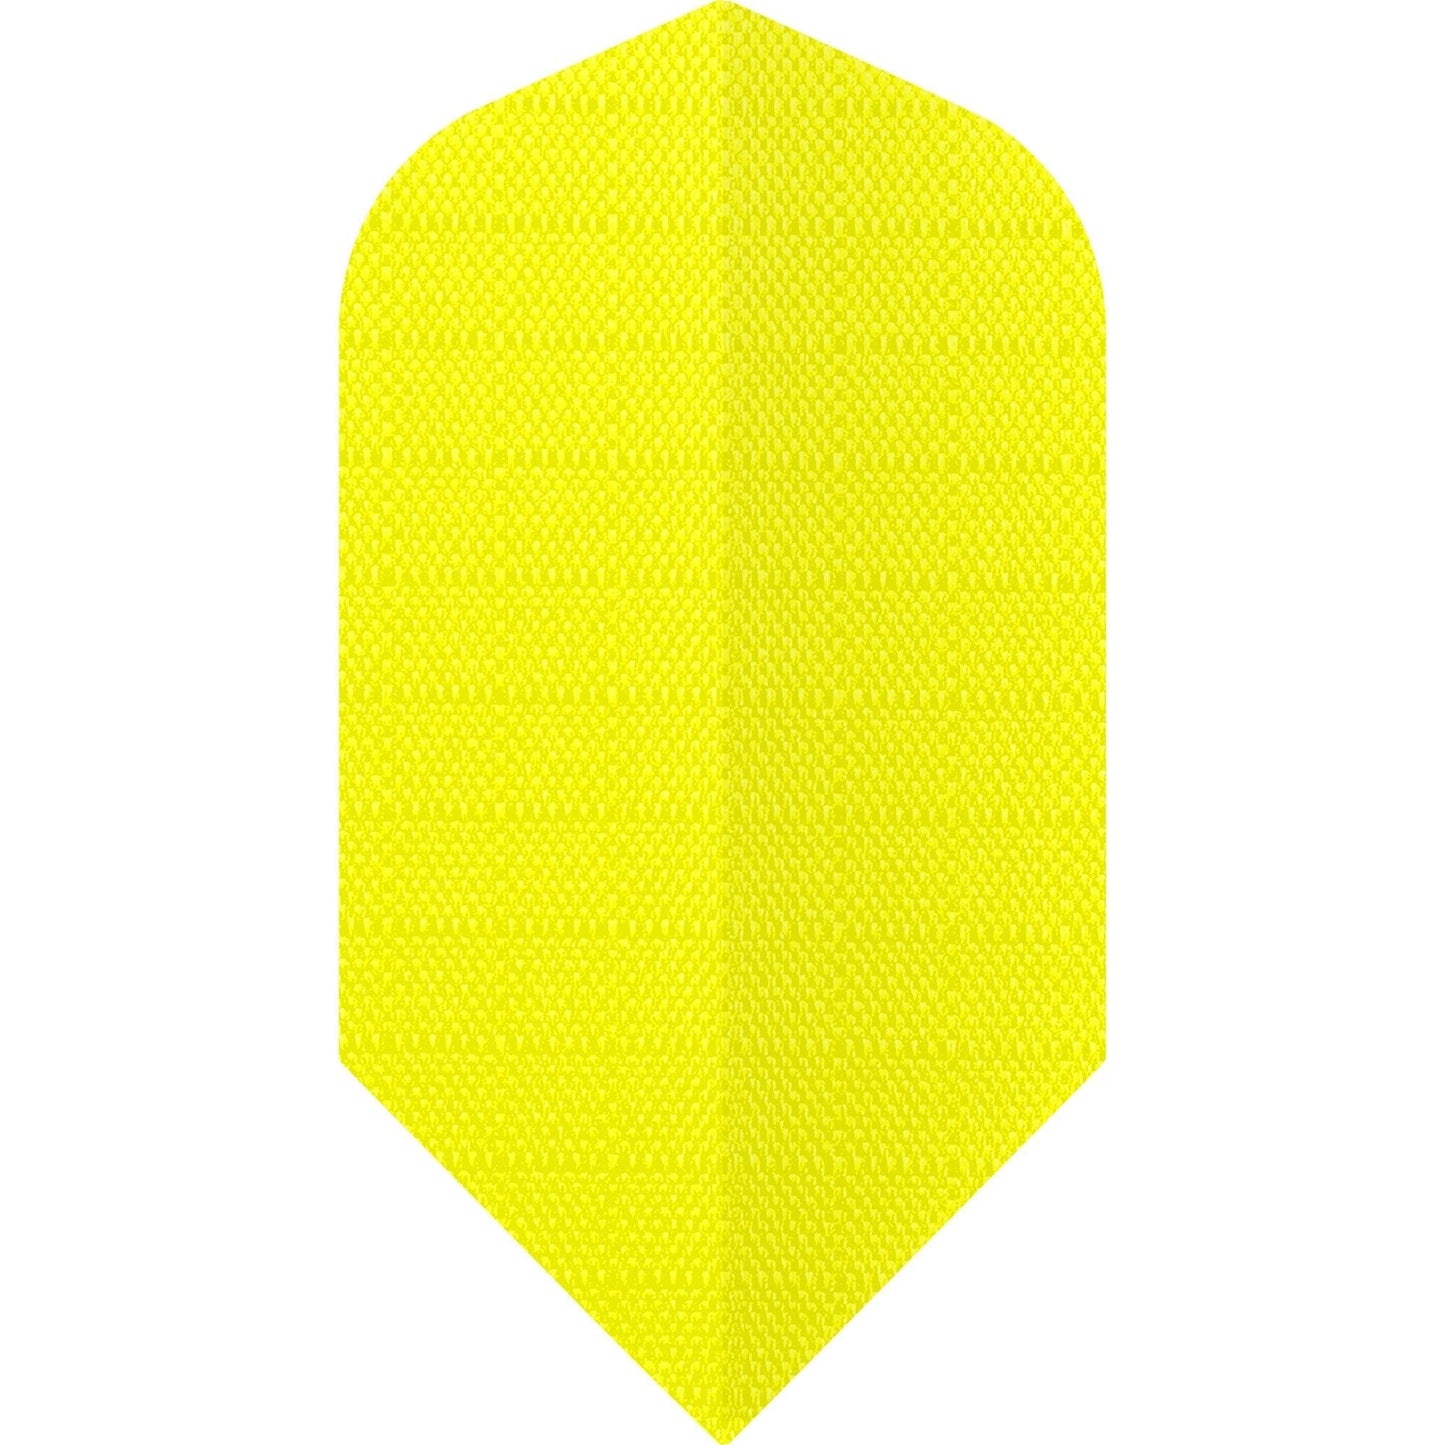 *Designa Dart Flights - Fabric Rip Stop Nylon - Longlife - Slim - Yellow